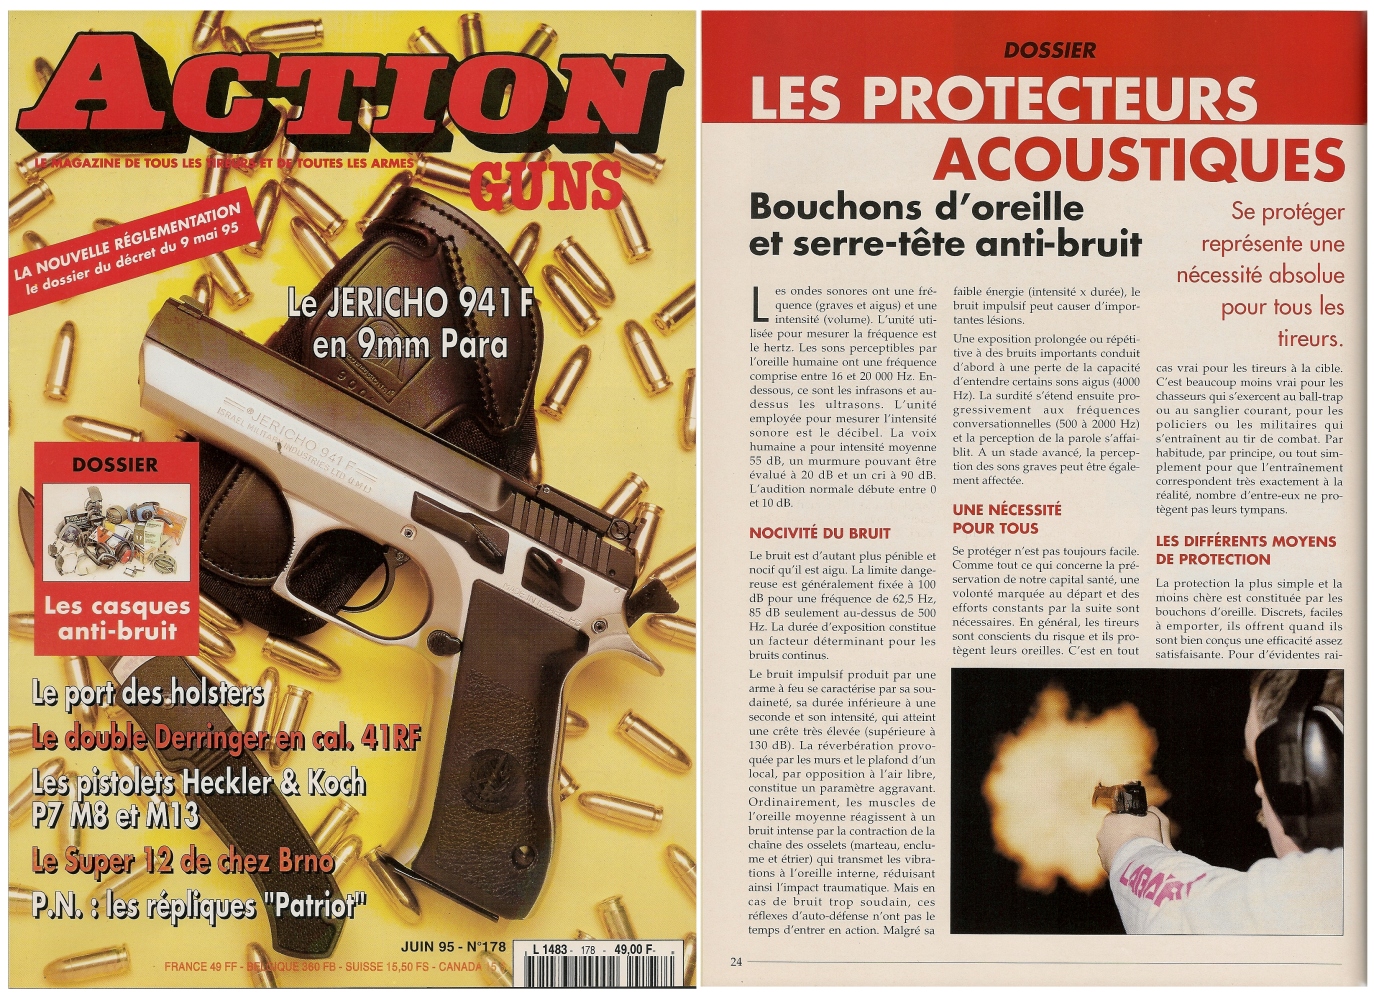 Le dossier consacré aux protecteurs acoustiques, bouchons d'oreille et serre-tête anti-bruit, avait été publié sur 8 pages dans le magazine Action Guns n° 178 (juin 1995).